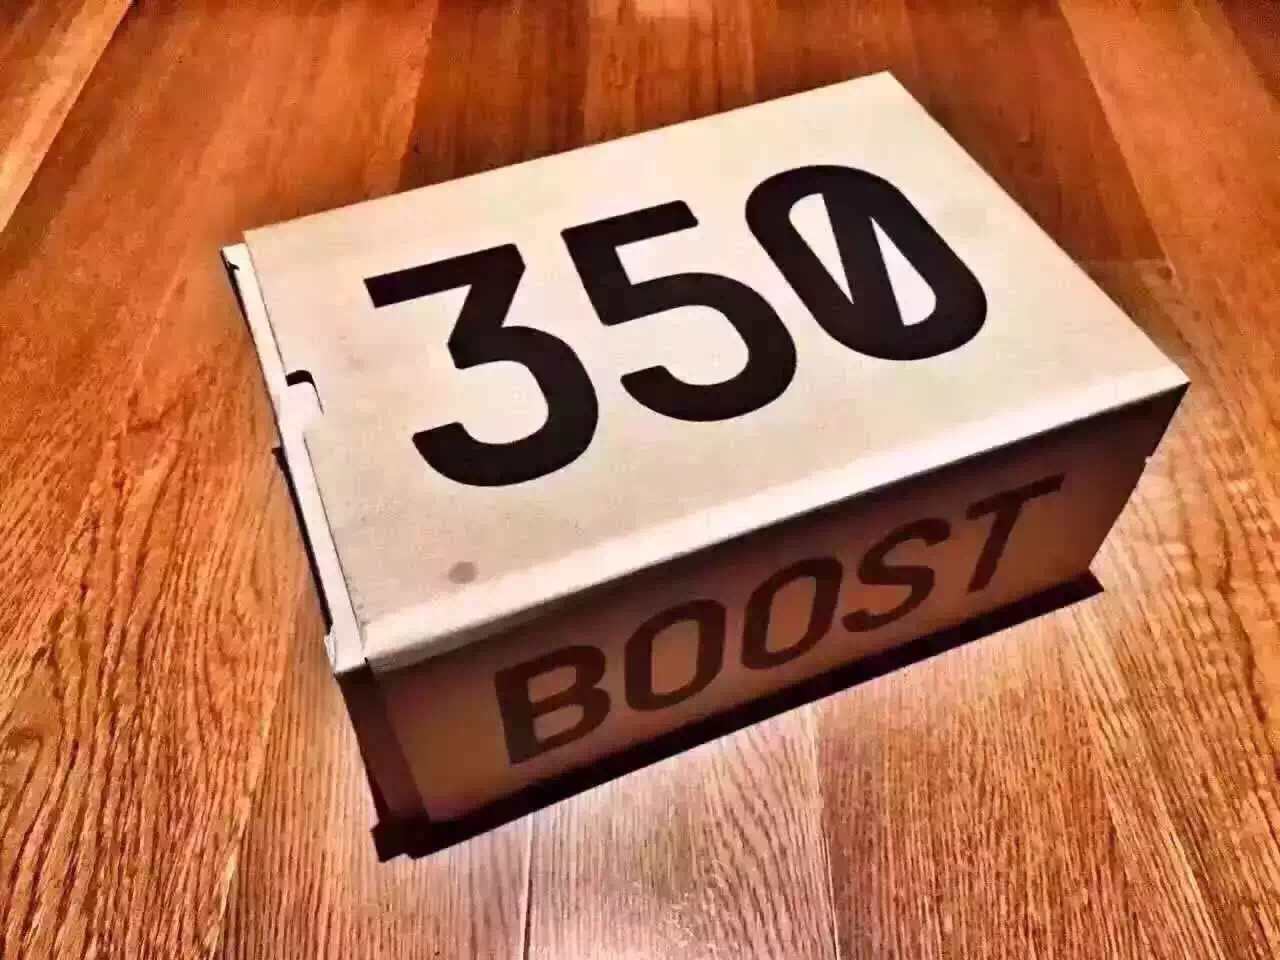 box yeezy 350